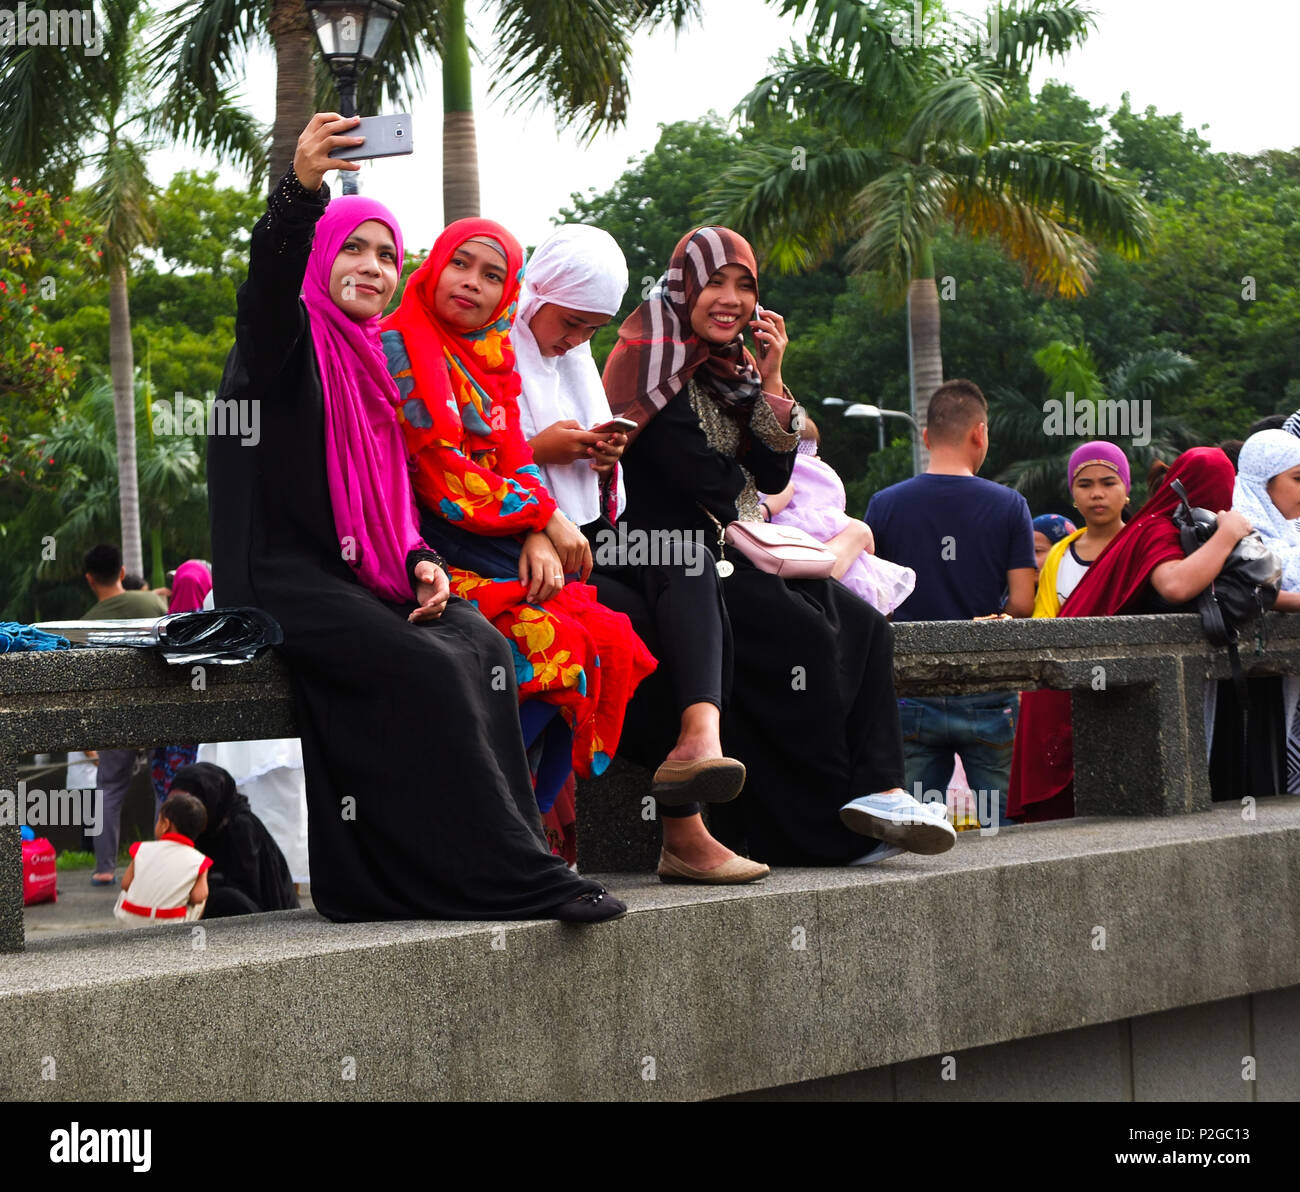 Un groupe de femmes musulmanes en tenant un. selfies Les musulmans philippins et étrangers se réunissent à Quirino Grandstand à Manille, pour célébrer la fin du Ramadan. Ils célèbrent avec des prières, de l'alimentation et plaisir, surtout pour la famille. L'Eid al-Fitr est une importante fête religieuse célébrée par les musulmans du monde entier qui marque la fin du Ramadan, le mois saint de jeûne islamique. Banque D'Images